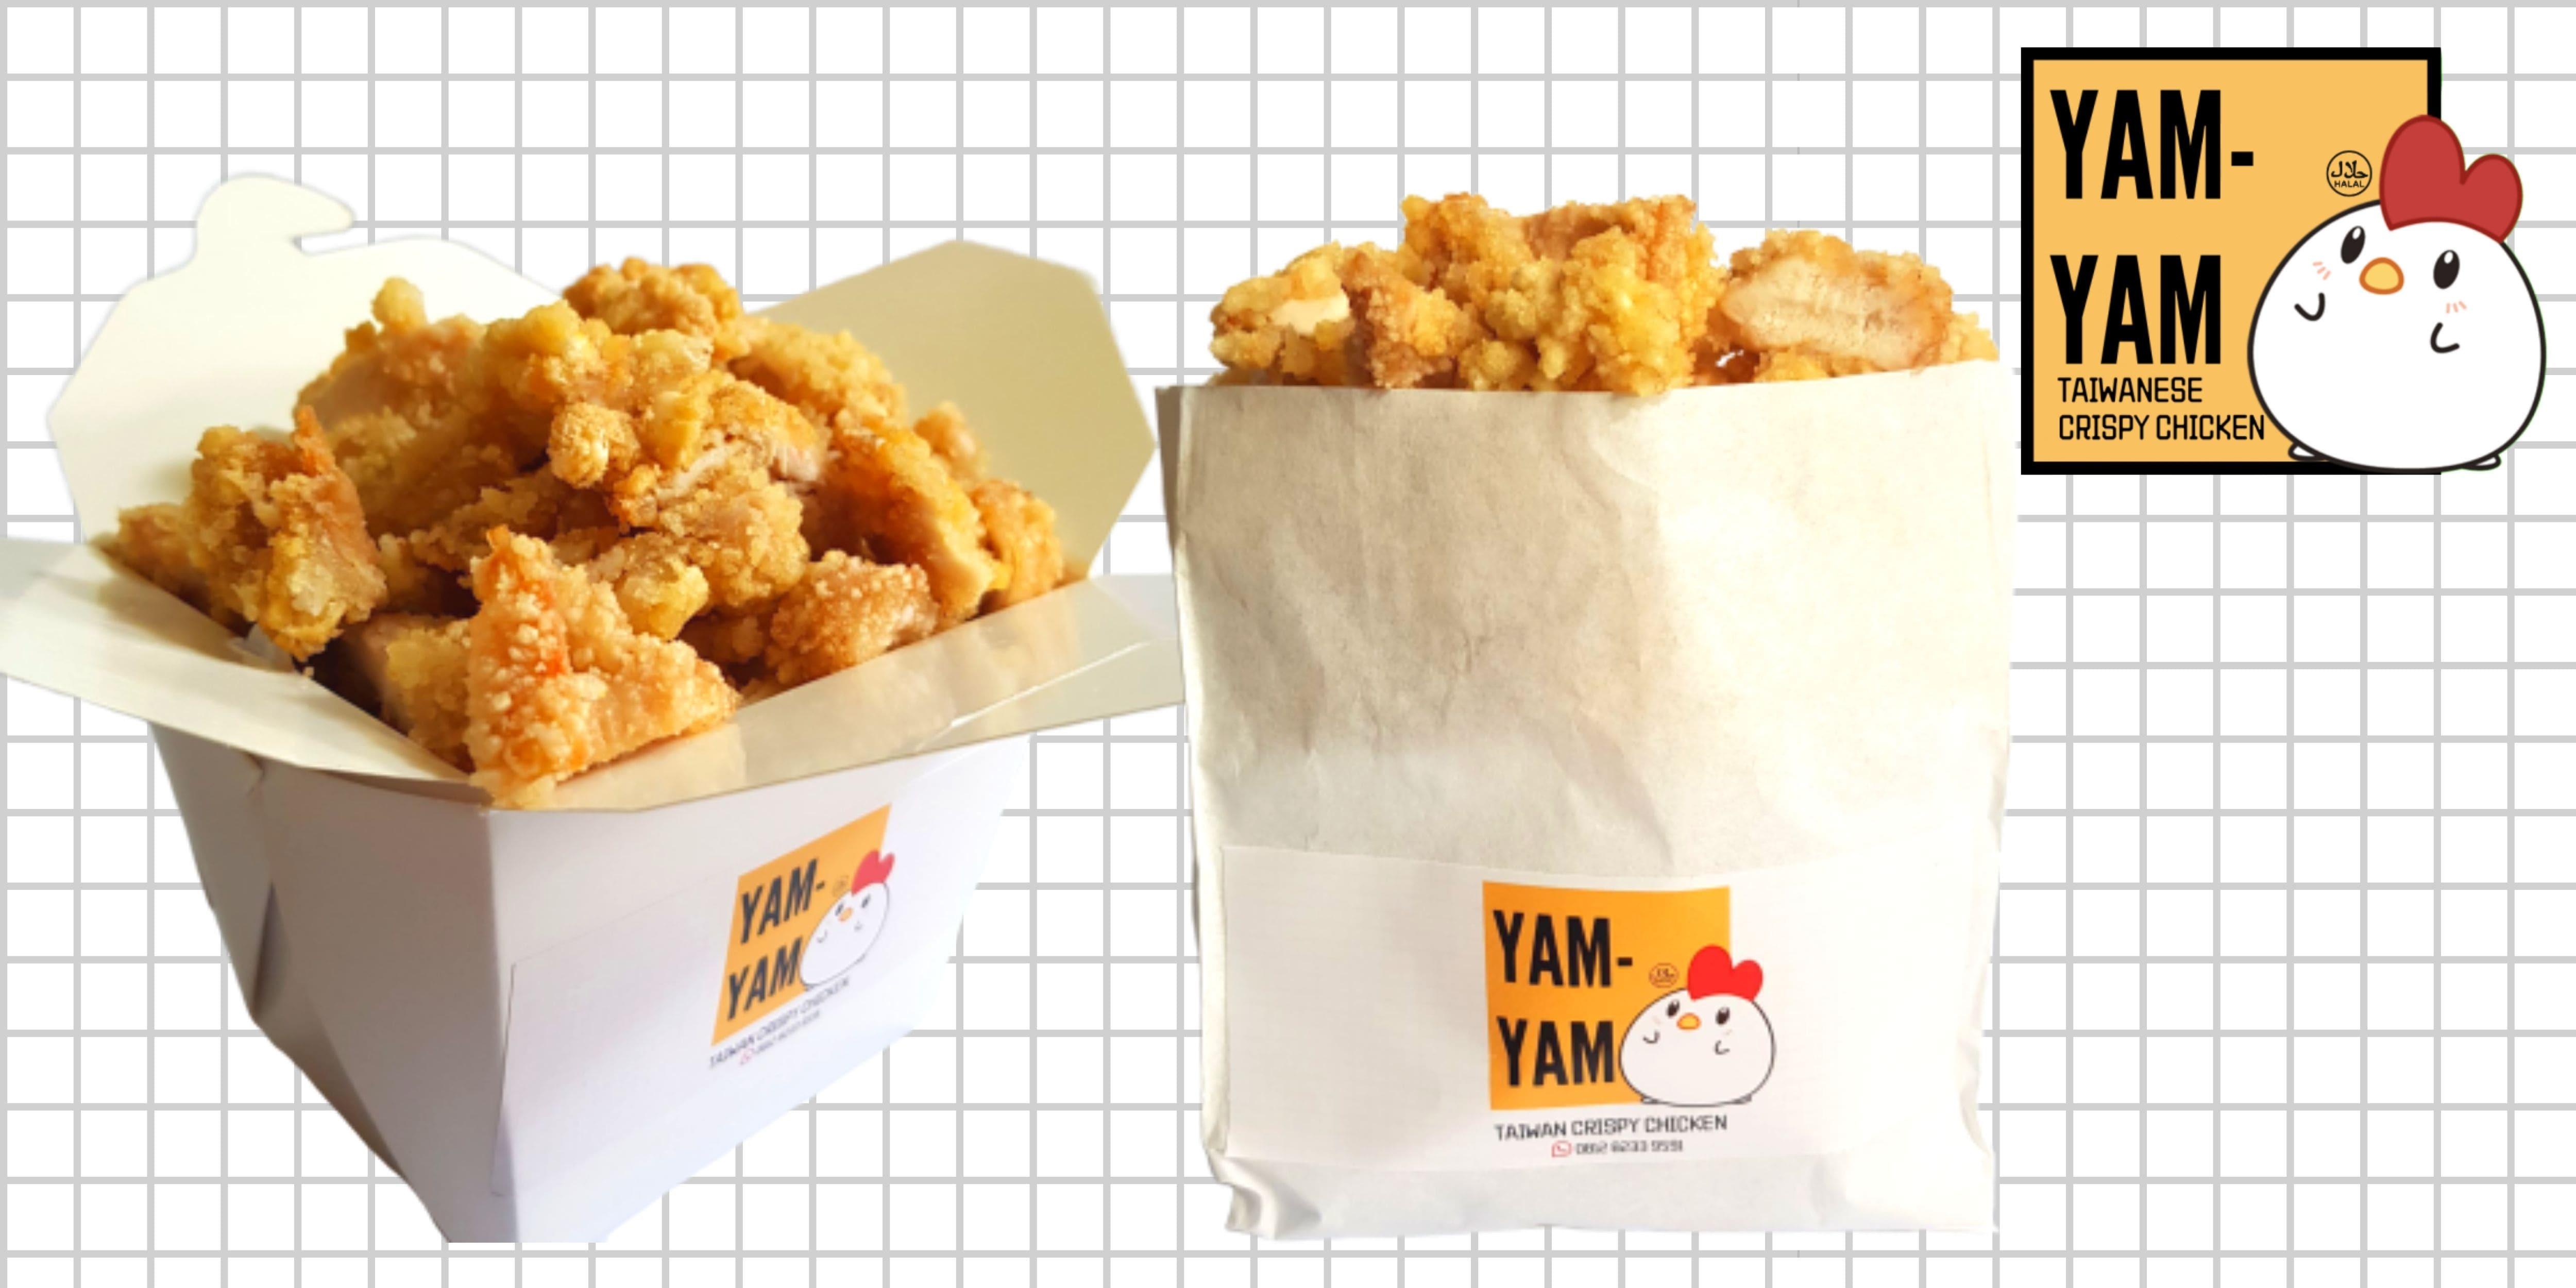 Yam-Yam Taiwan Crispy Chicken, Depok